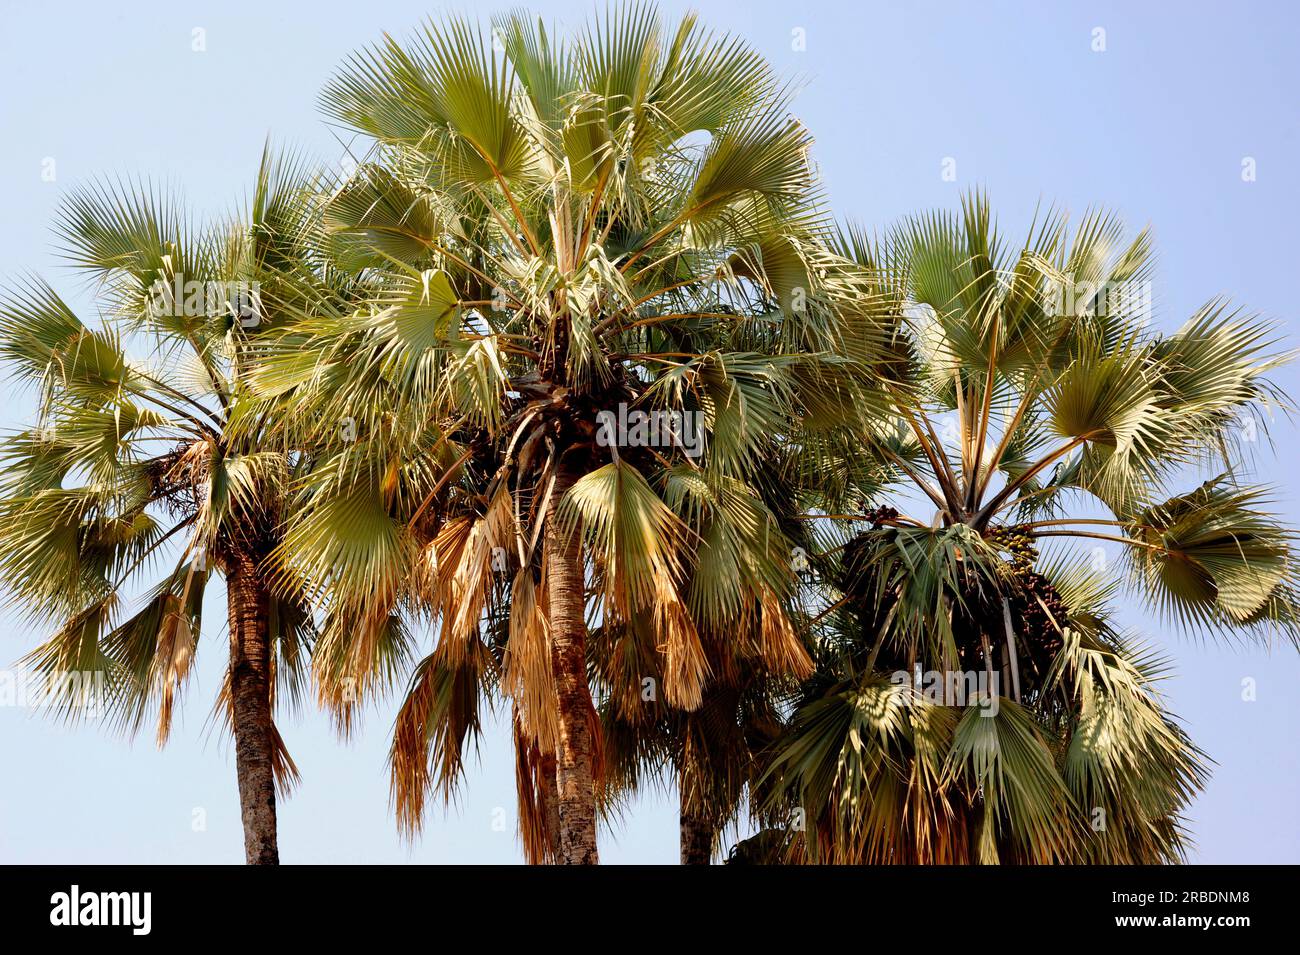 La vera palma da ventaglio o palma Makalani (Hyphaene petersiana) è una palma dirompente originaria dell'Africa centro-meridionale. Angiosperme. Arecaceae. Questa foto mi è stata fatta Foto Stock